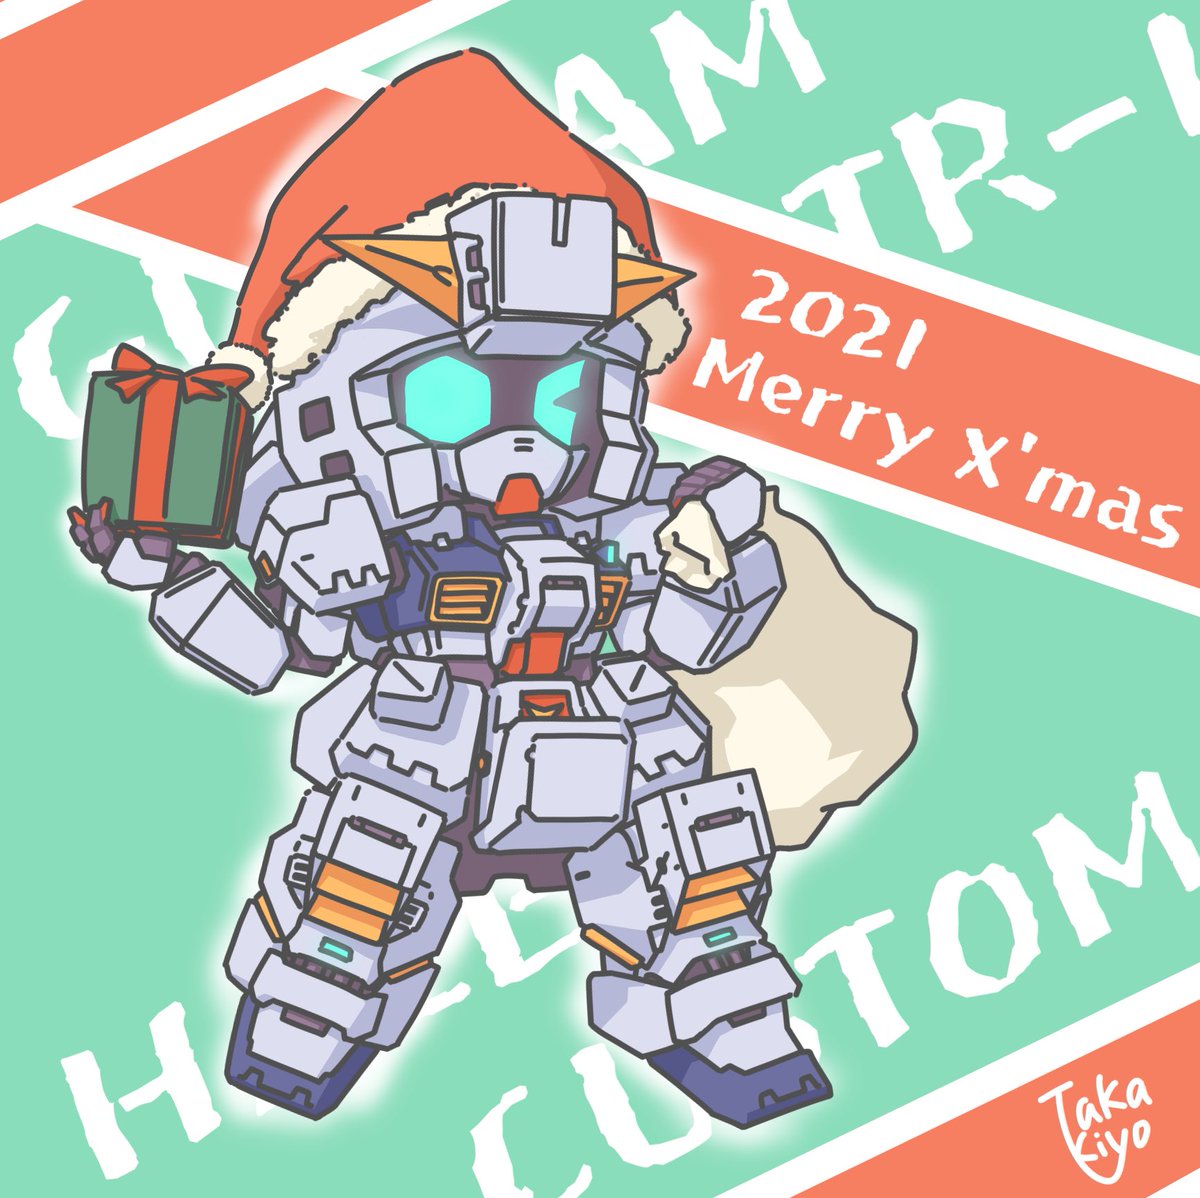 「これは去年のクリスマスに描いたヘイズルちゃん 」|Takakiyoのイラスト